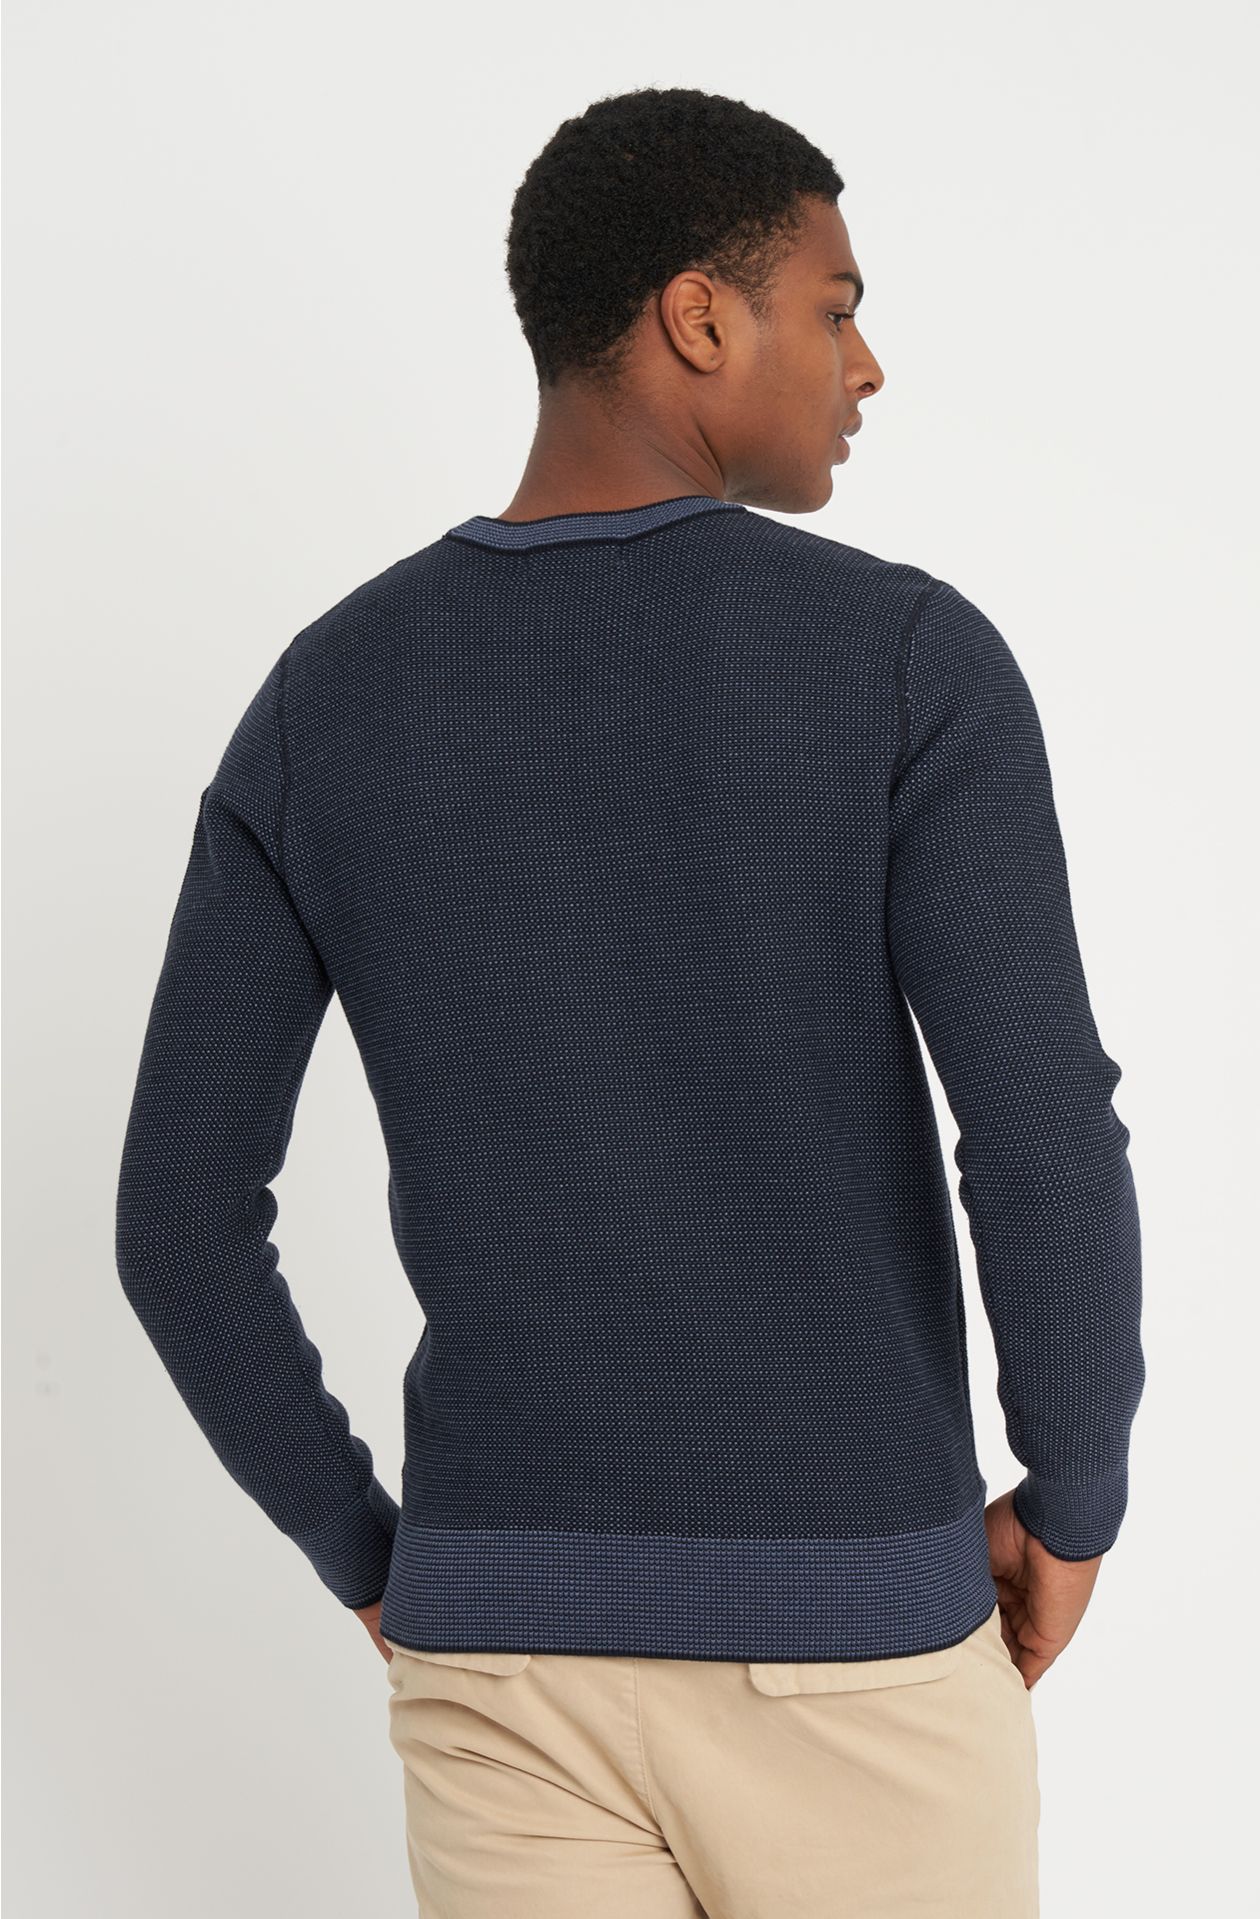 Urban line warm cotton sweater